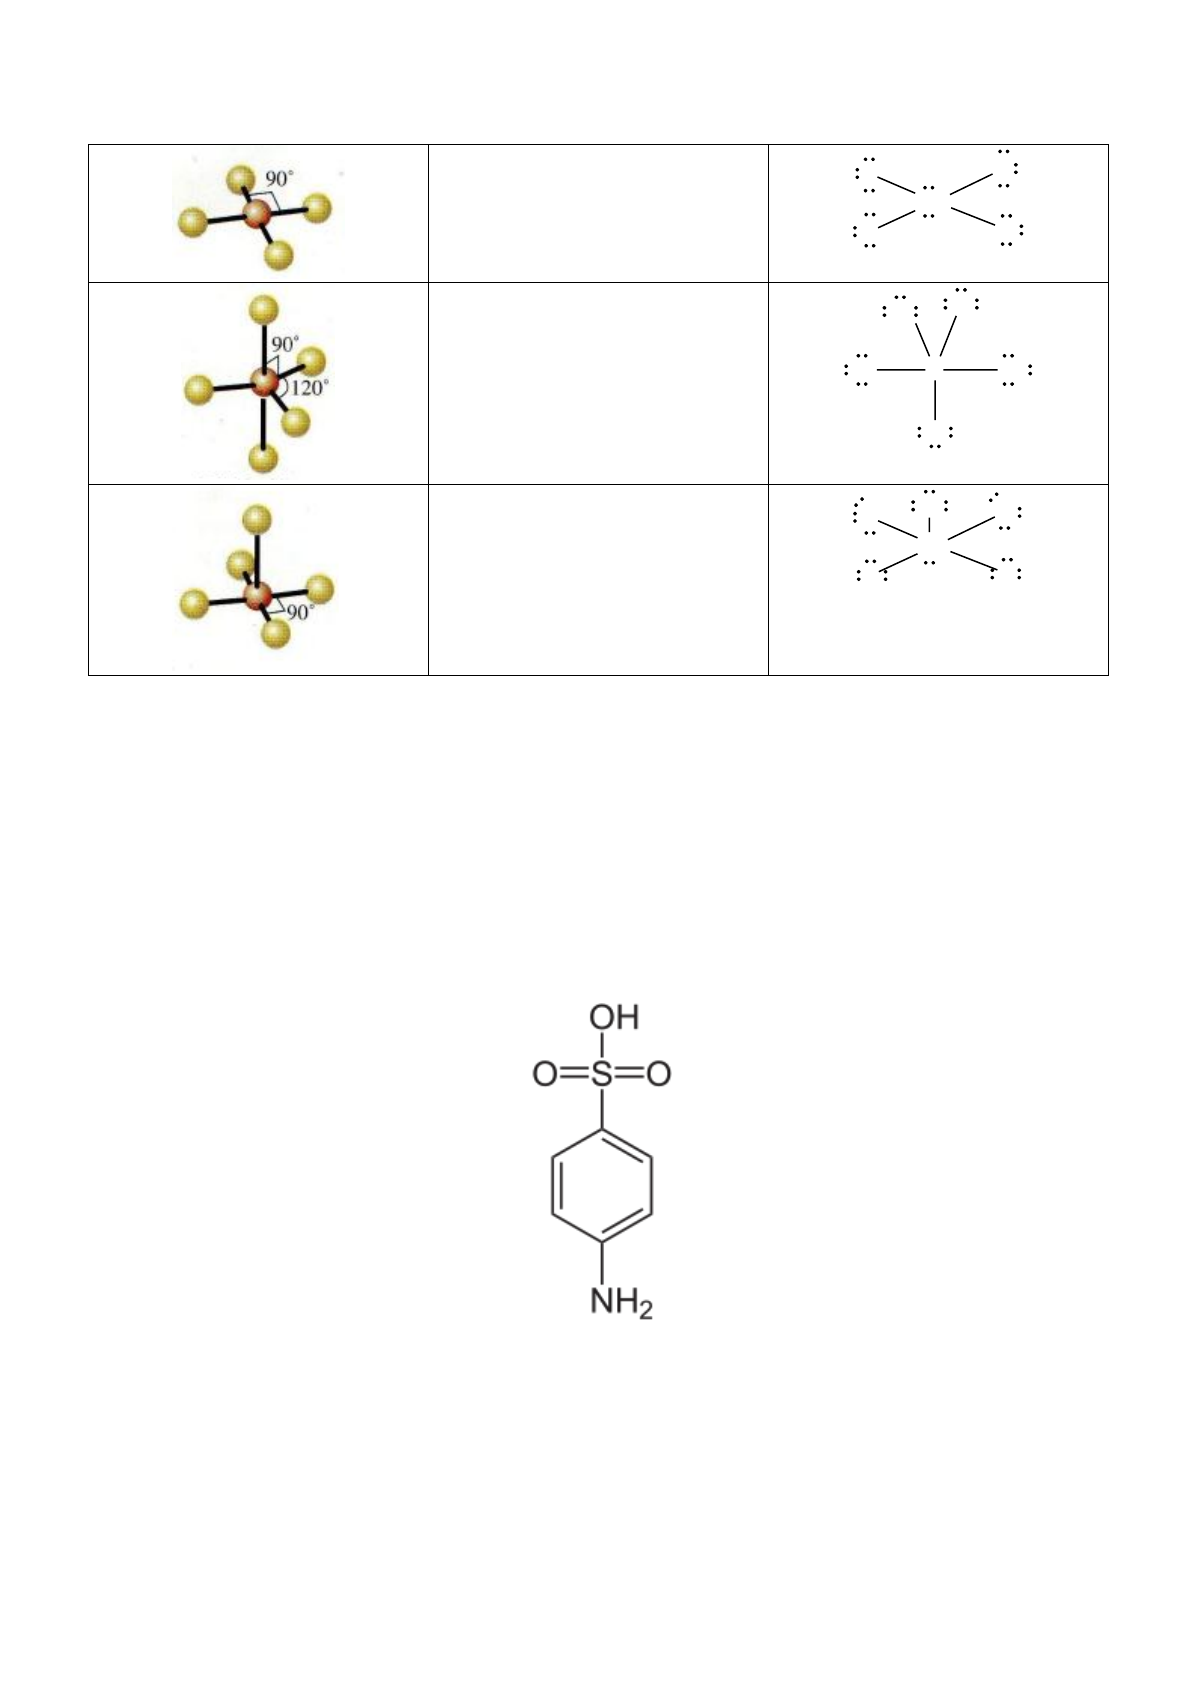 Quimica 2 MP 0041P18123 PNLD2018-leonardoportal com - Química